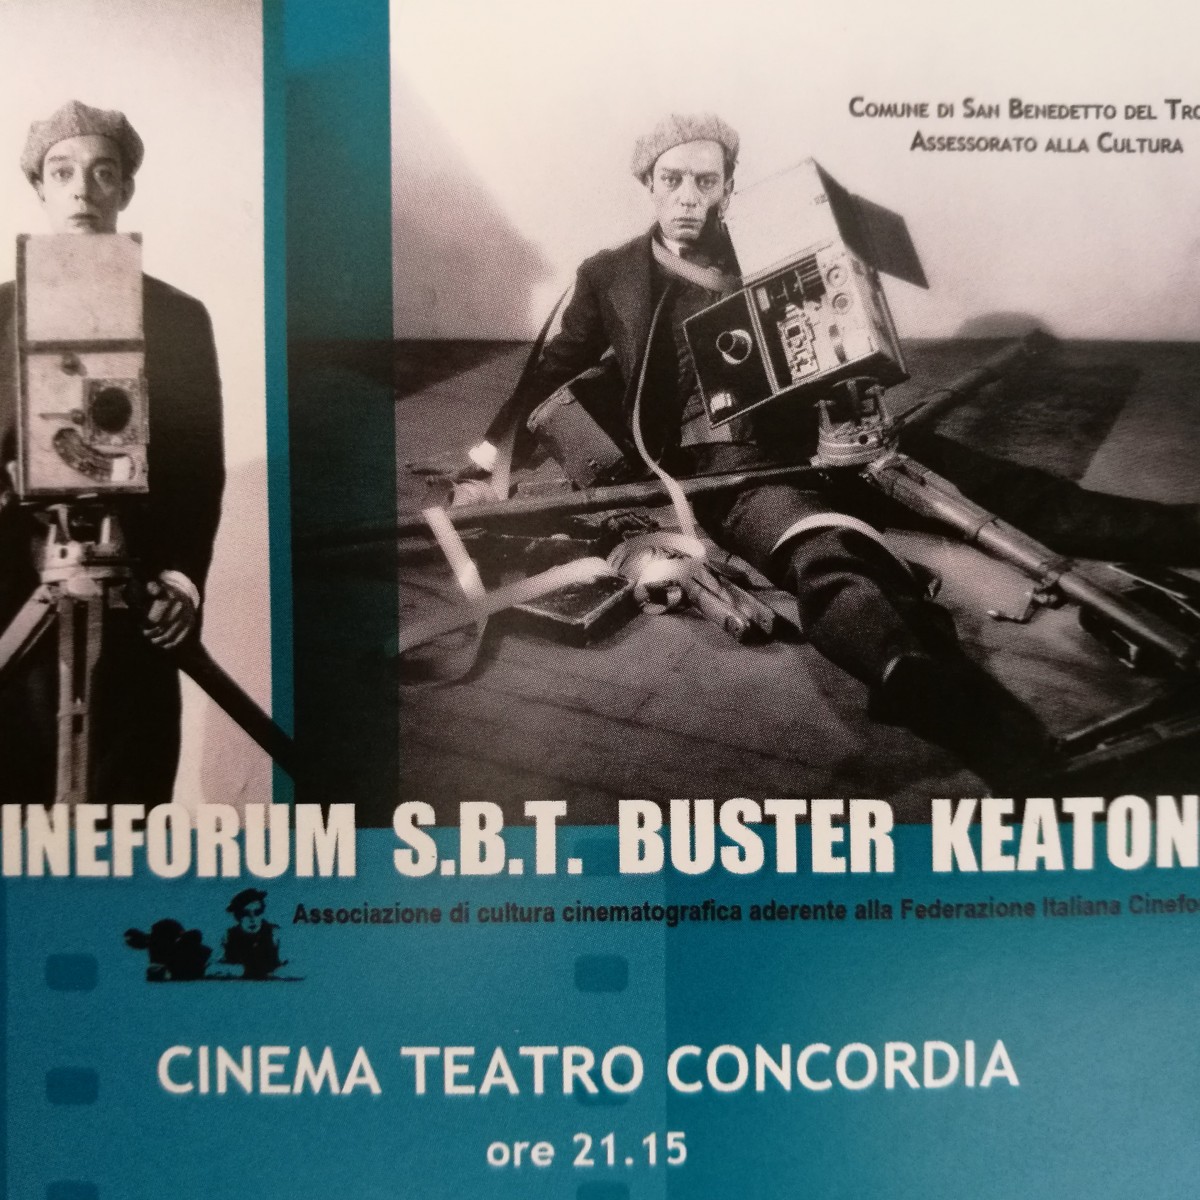 Cineforum Buster Keaton